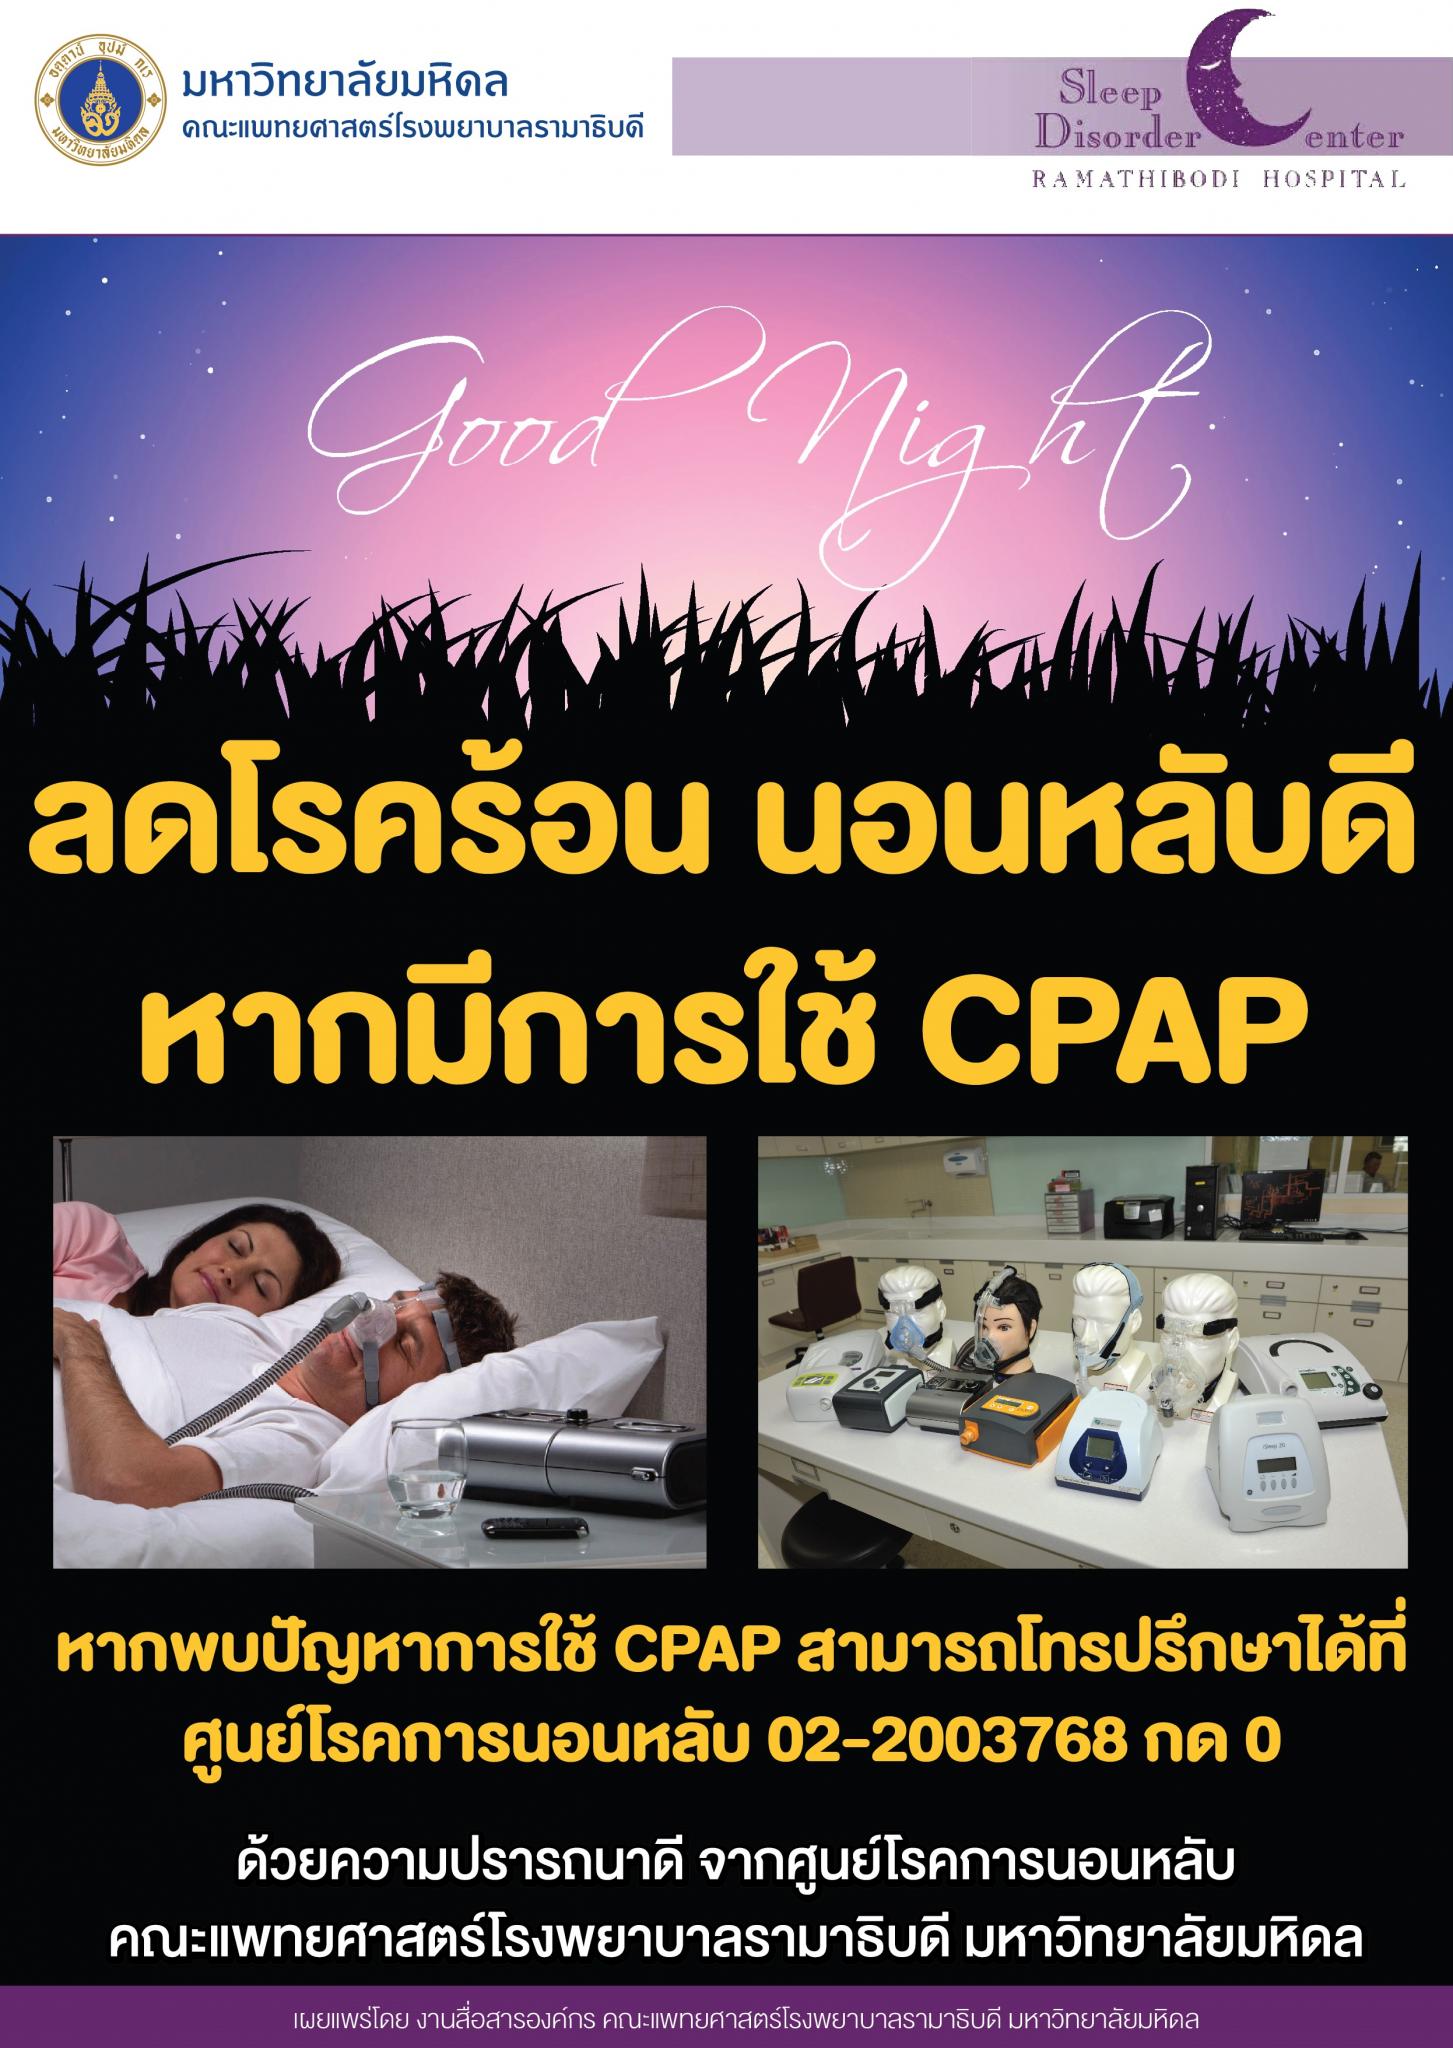 ลดโรคร้อน นอนหลับดี หากมีการใช้ CPAP